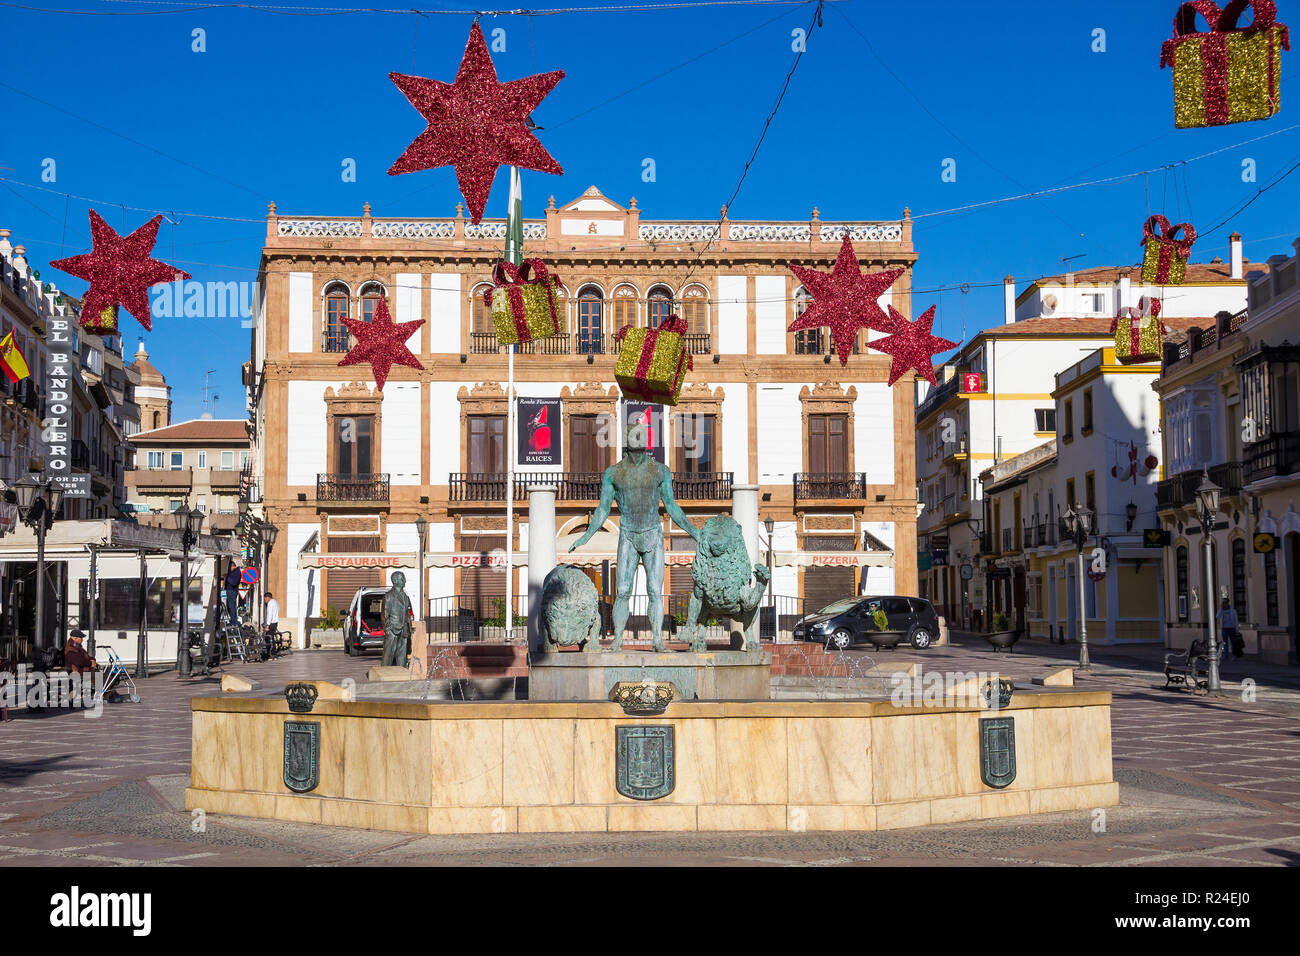 RONDA, Spagna - 14 dicembre 2017: Sunny piazza (Plaza del Socorro) nel centro di Ronda con decorazione di vacanza per Natale Foto Stock